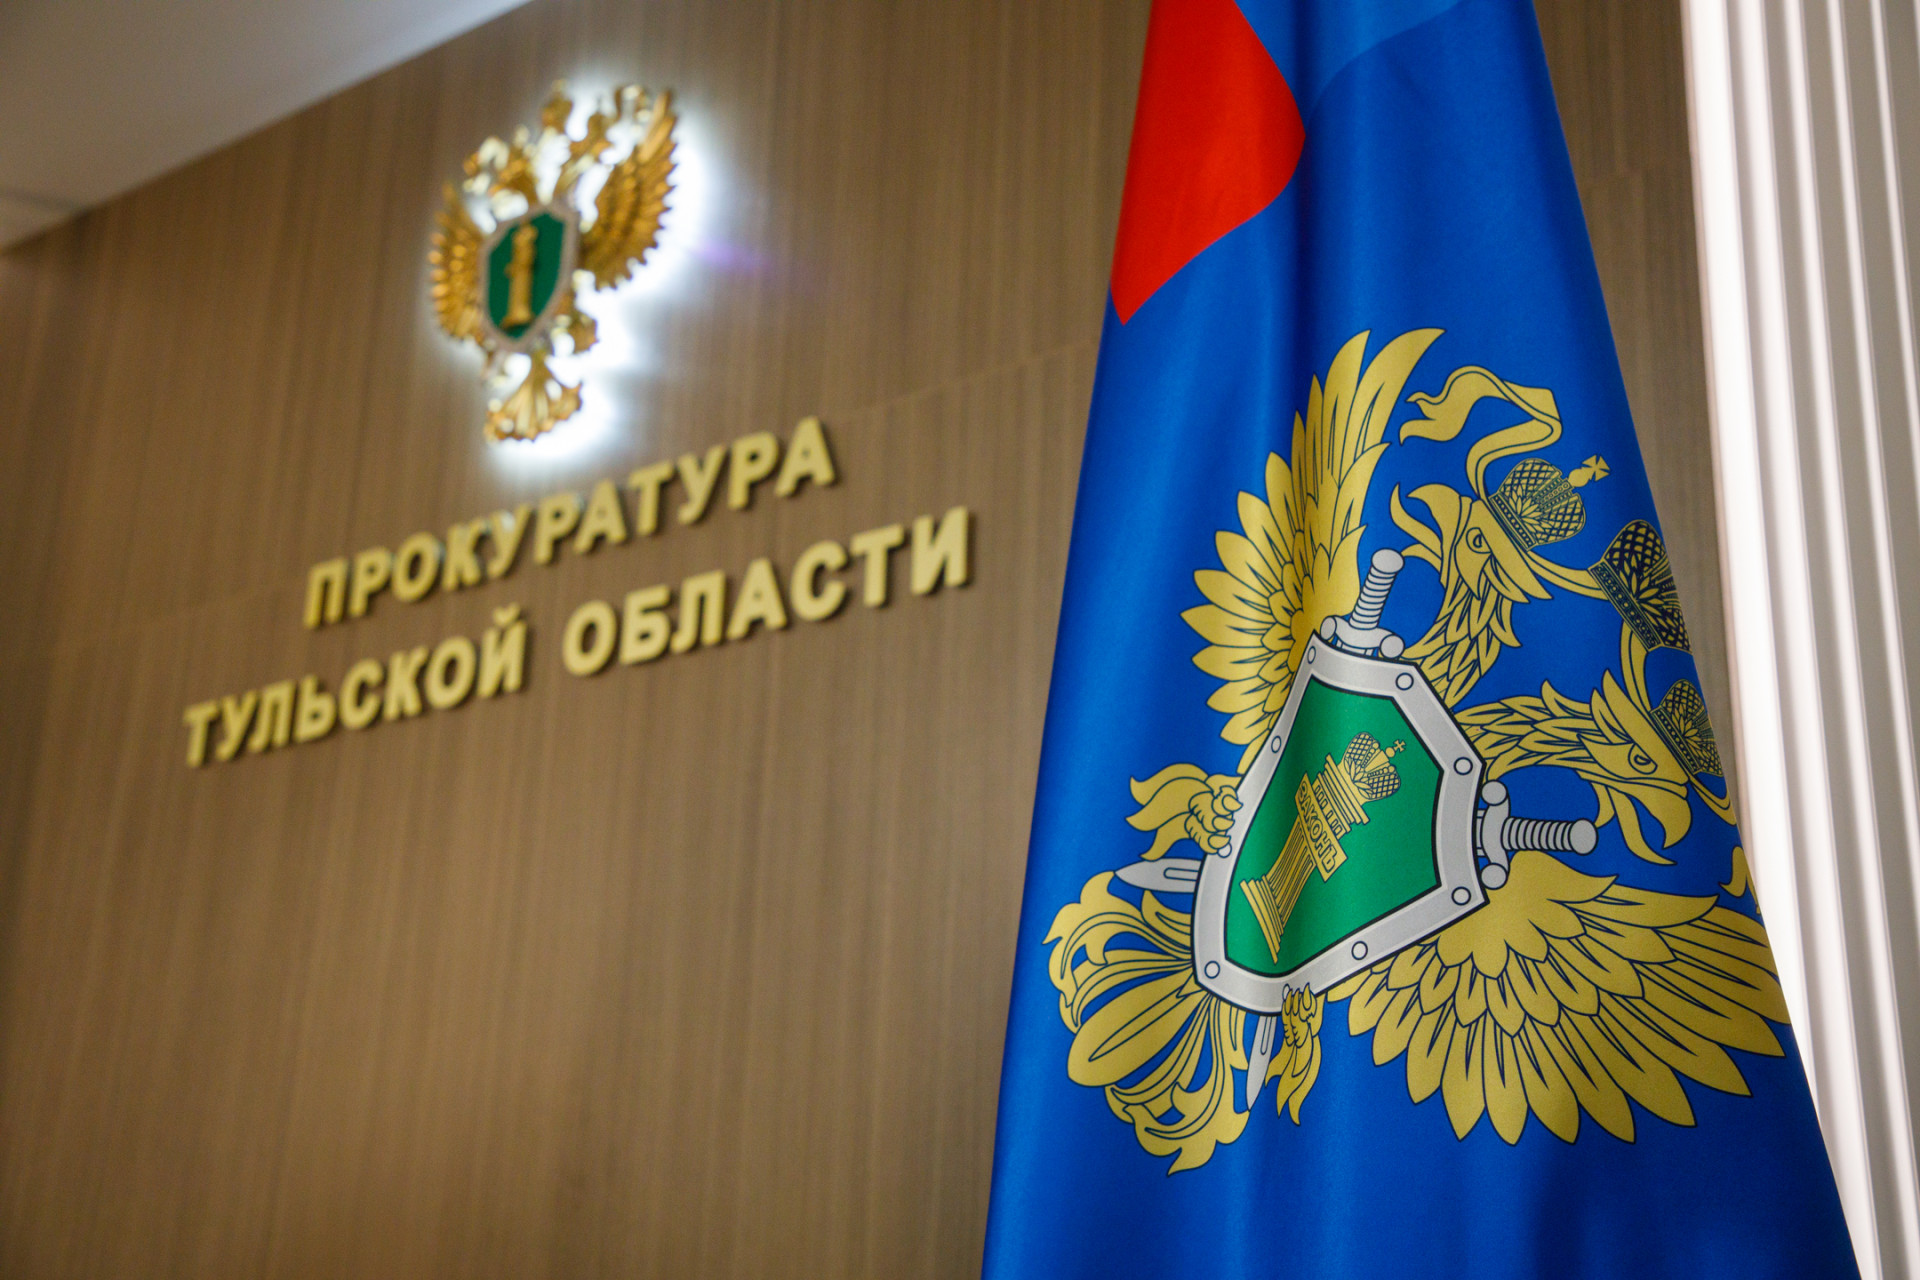 Заведующую муниципальным учреждением в Ясногорске оштрафовали за коррупционное нарушение